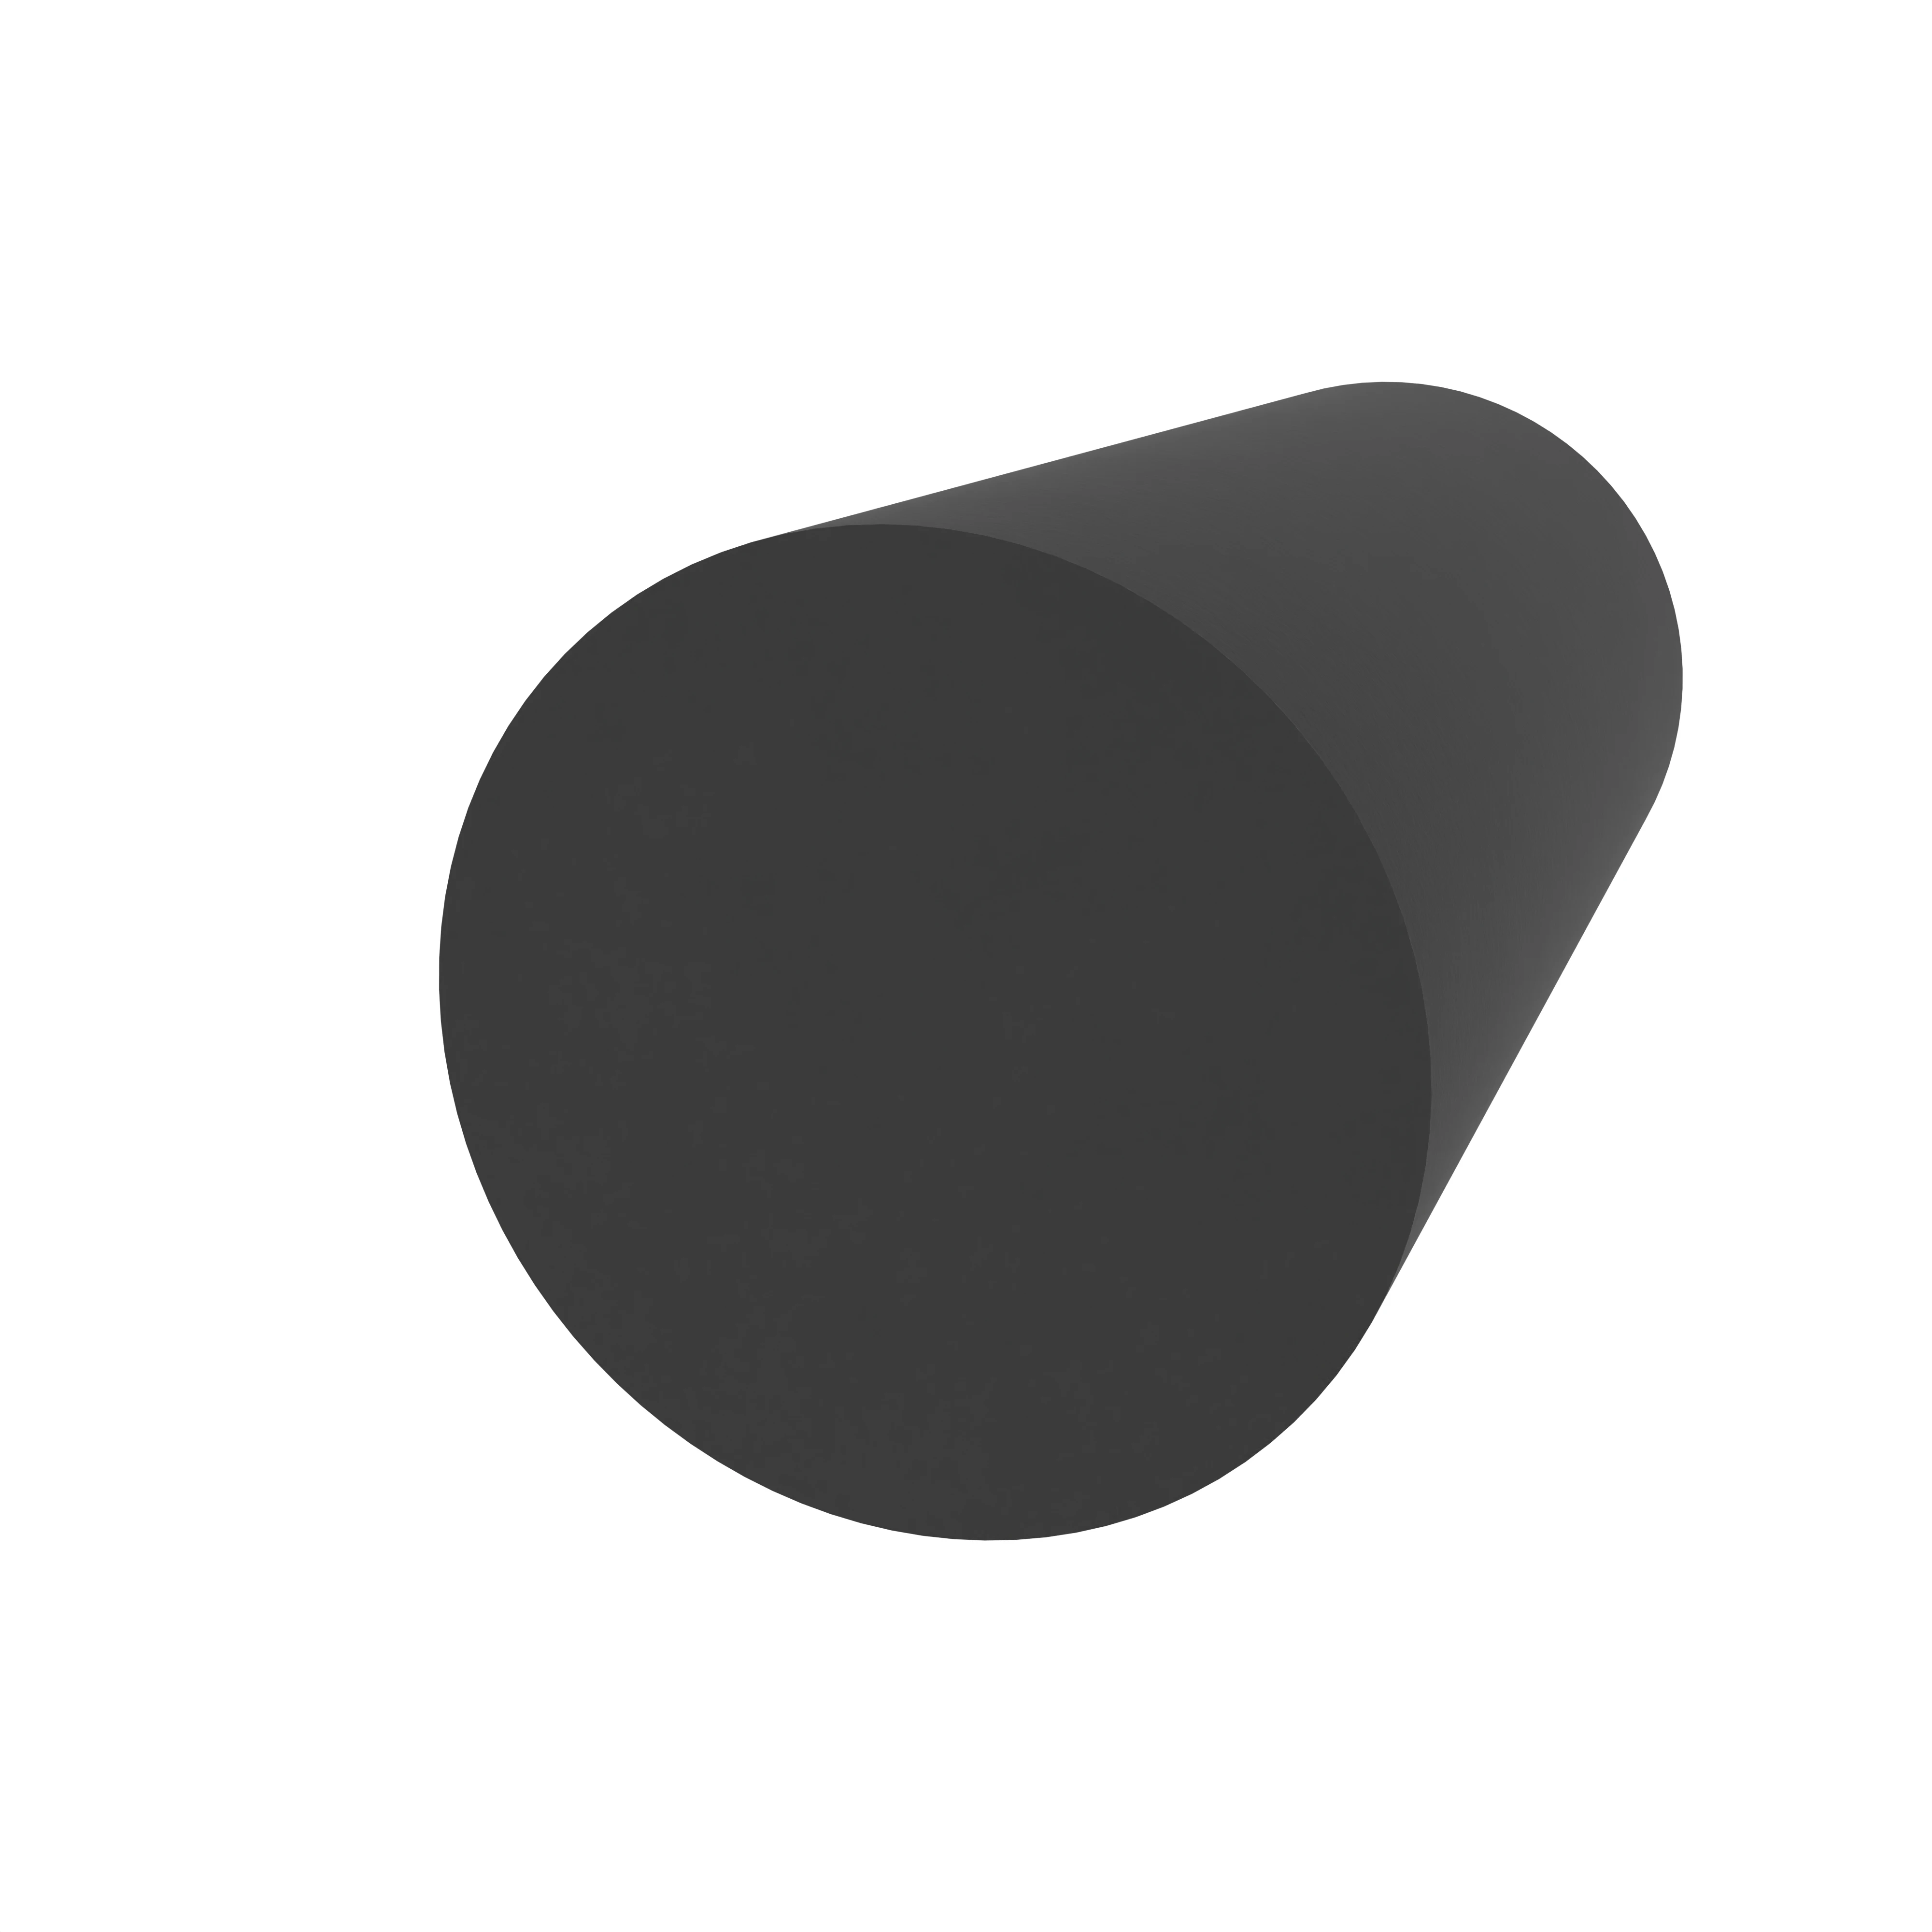 Moosgummidichtung rund | 8 mm Durchmesser | Farbe: schwarz